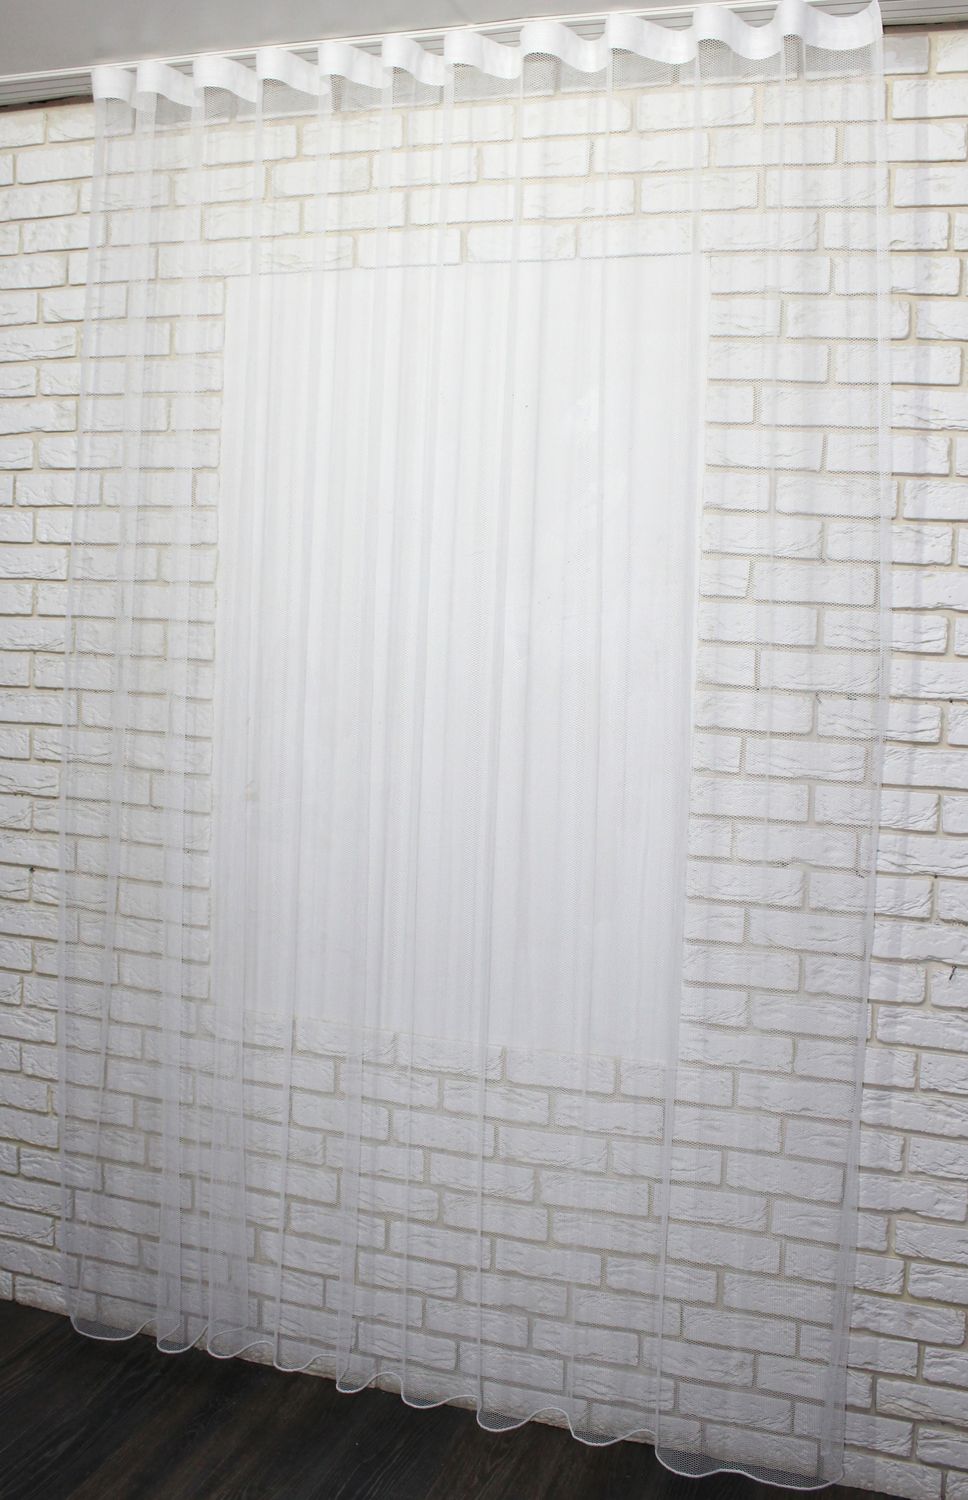 Тюль грек-сетка однотонная, коллекция "Грек Соты", высотой 3м цвет белый 957т, Тюль на метраж, Нужную Вам ширину указывайте при покупке. (Ширина набирается по длине рулона.), 3 м.